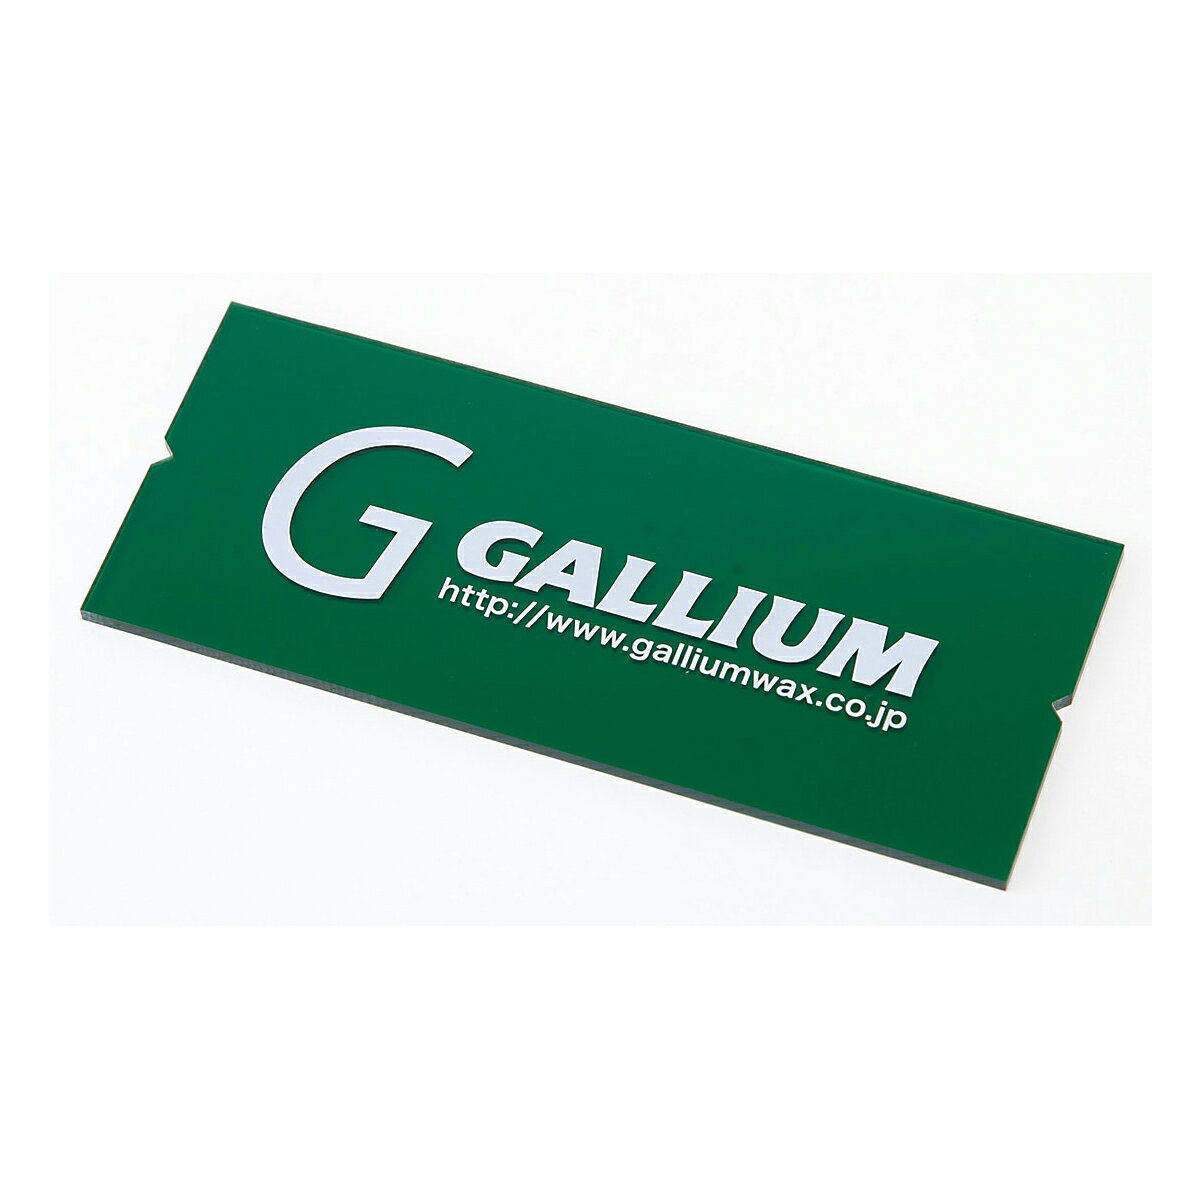 【ネコポス便発送可】ガリウムワックス GALLIUM WAX TU0156 スクレーパー(M) スキー スノーボード チューンナップ ホットワックス